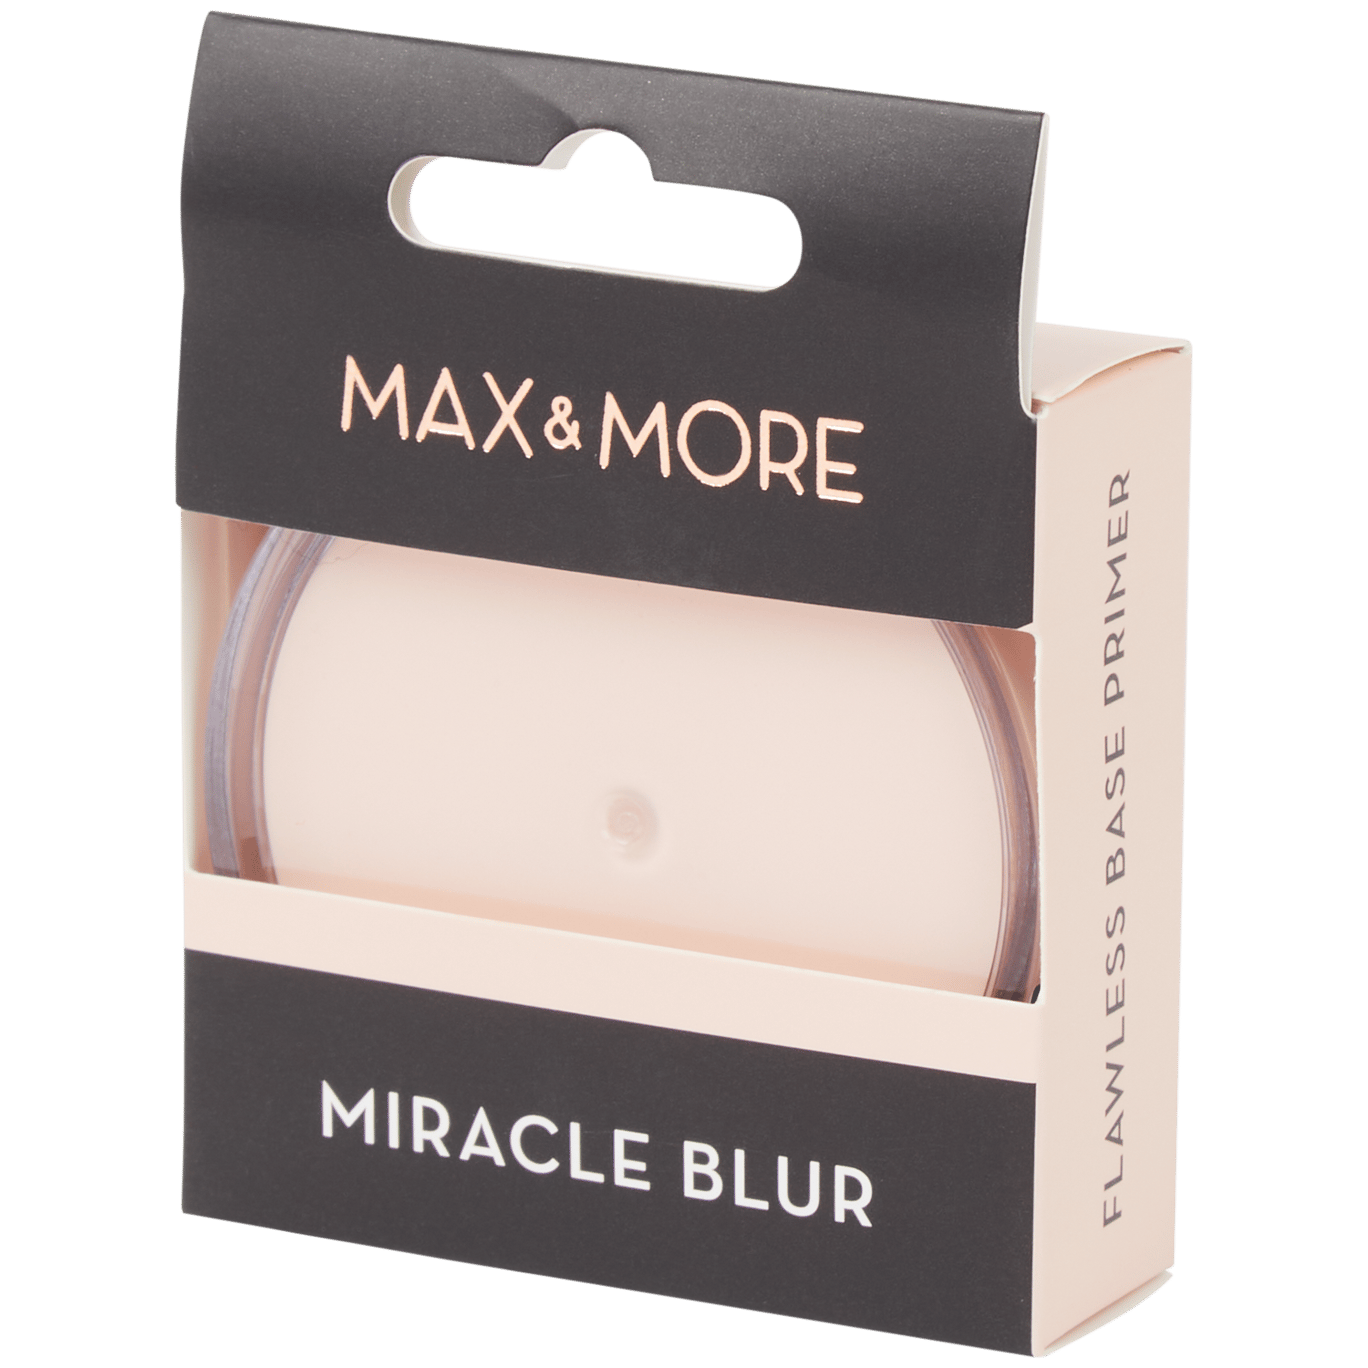 Podkład Max & More Miracle Blur